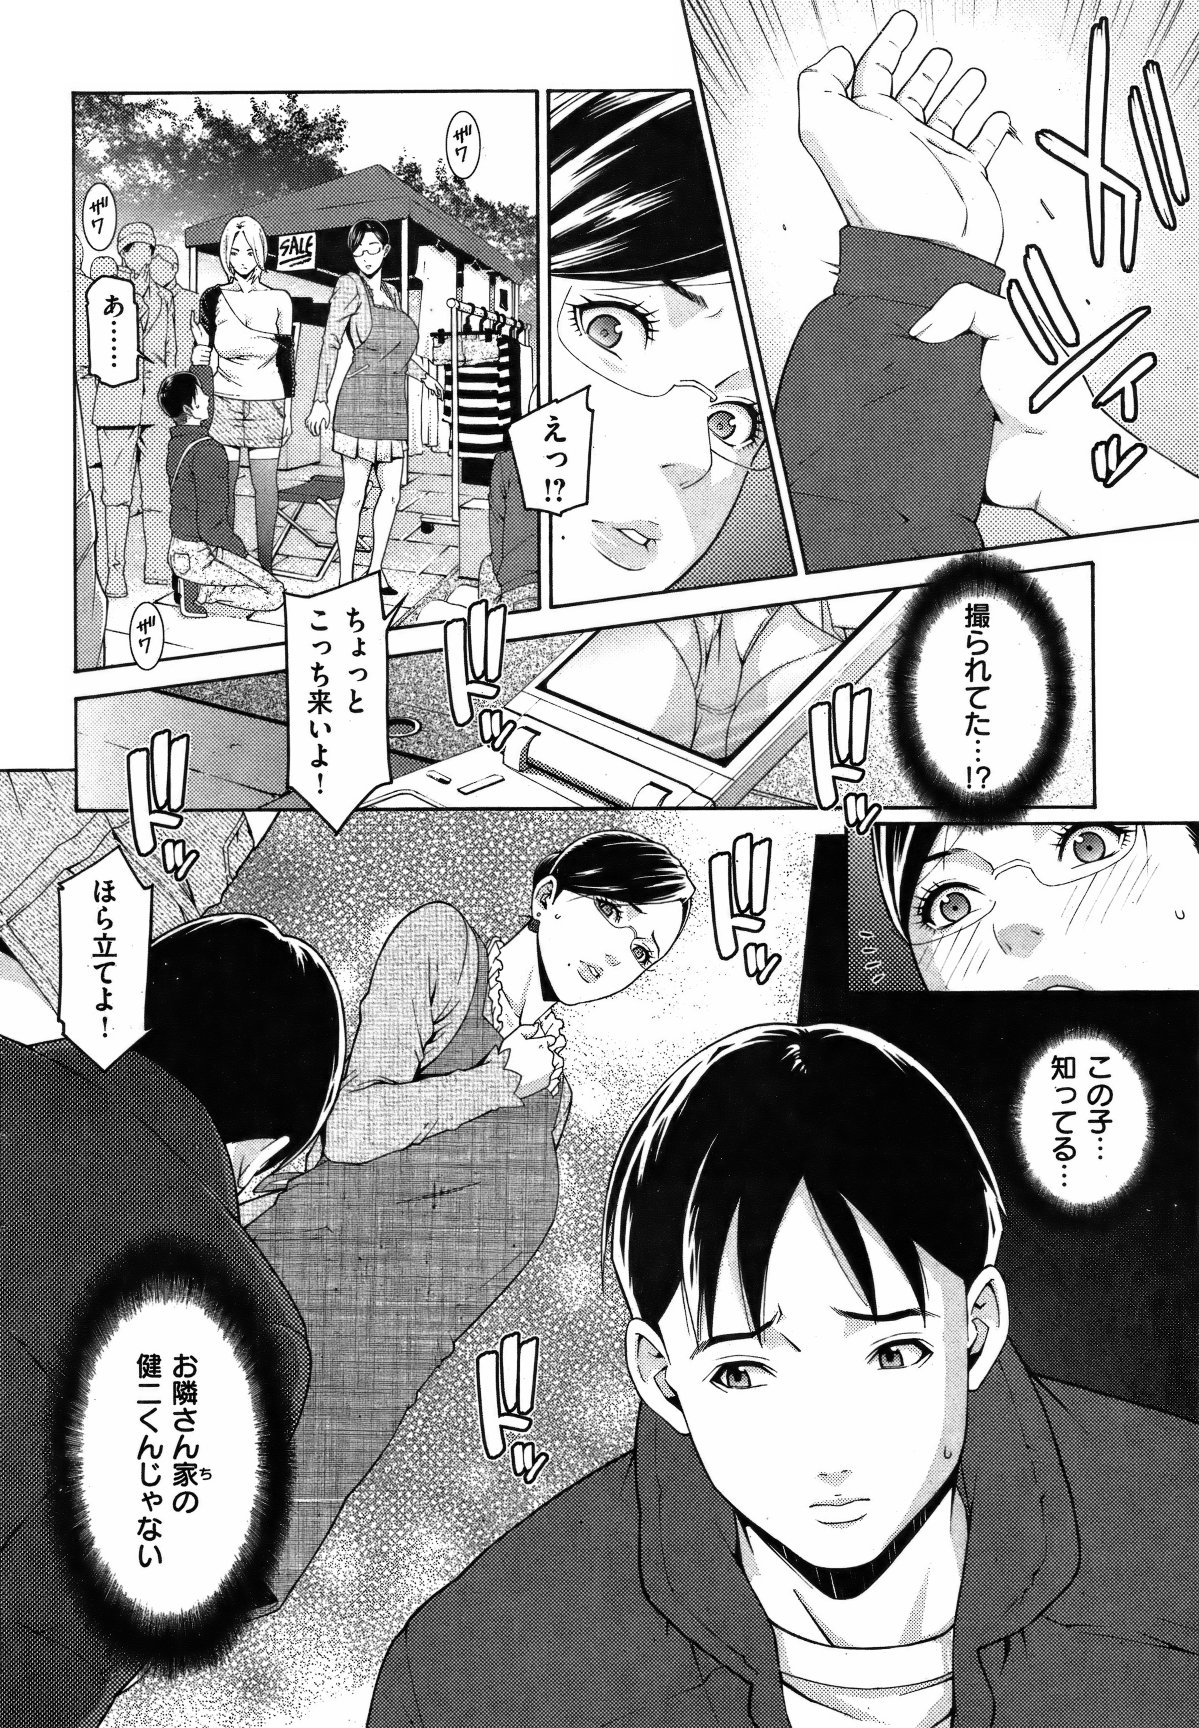 [雑誌] COMIC 失楽天 Vol.08 COMIC 快楽天 2012年02月号増刊